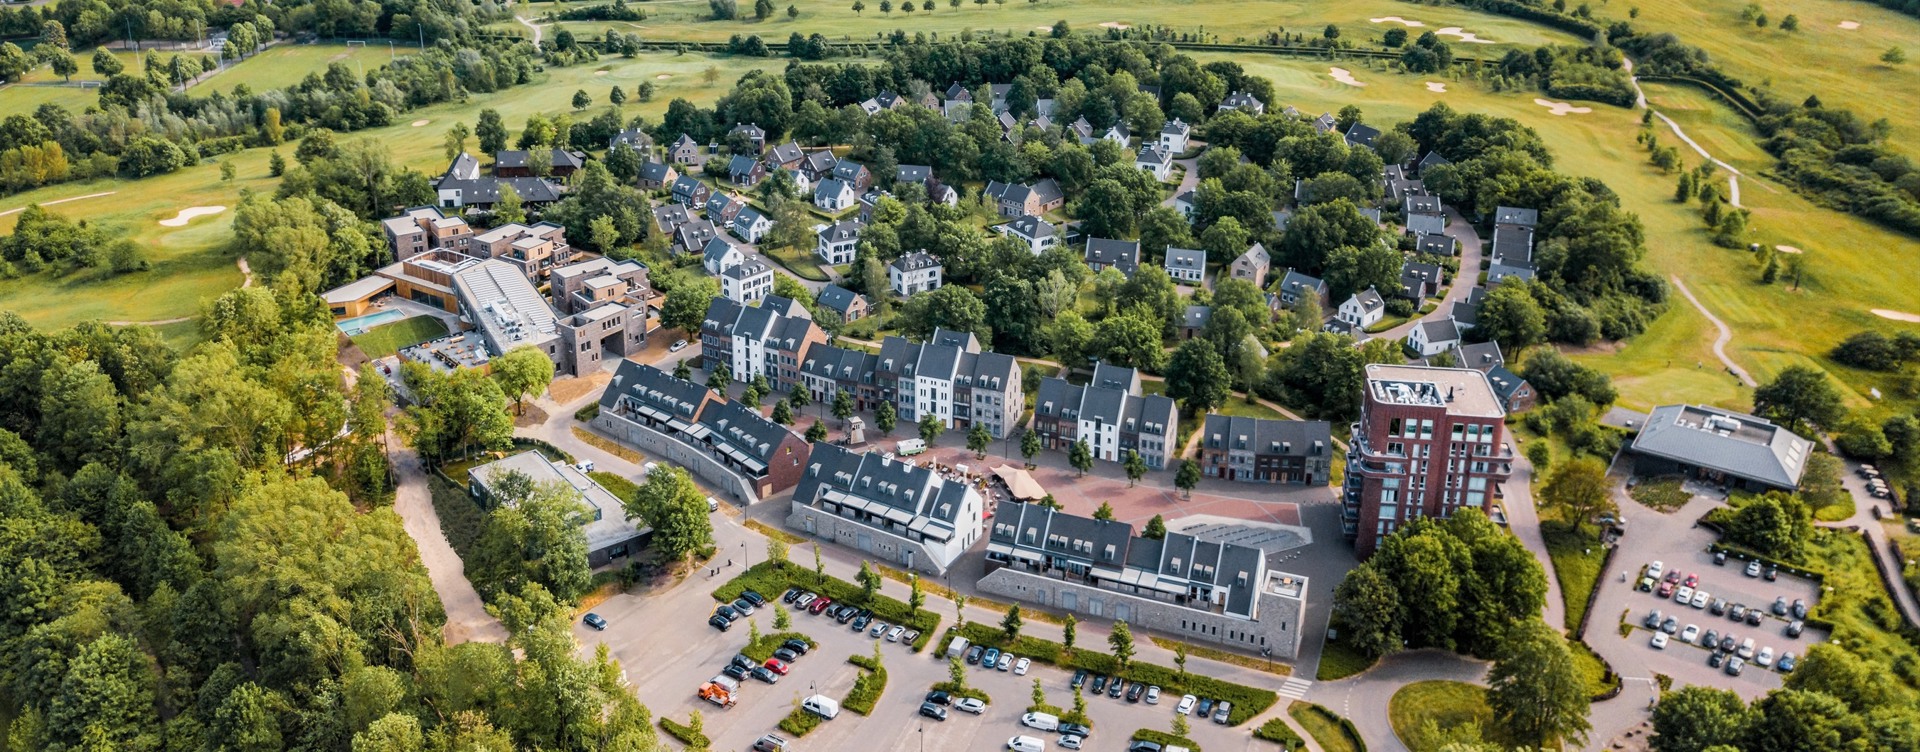 Geniet van hoogwaardige faciliteiten
op een luxe resort in Maastricht